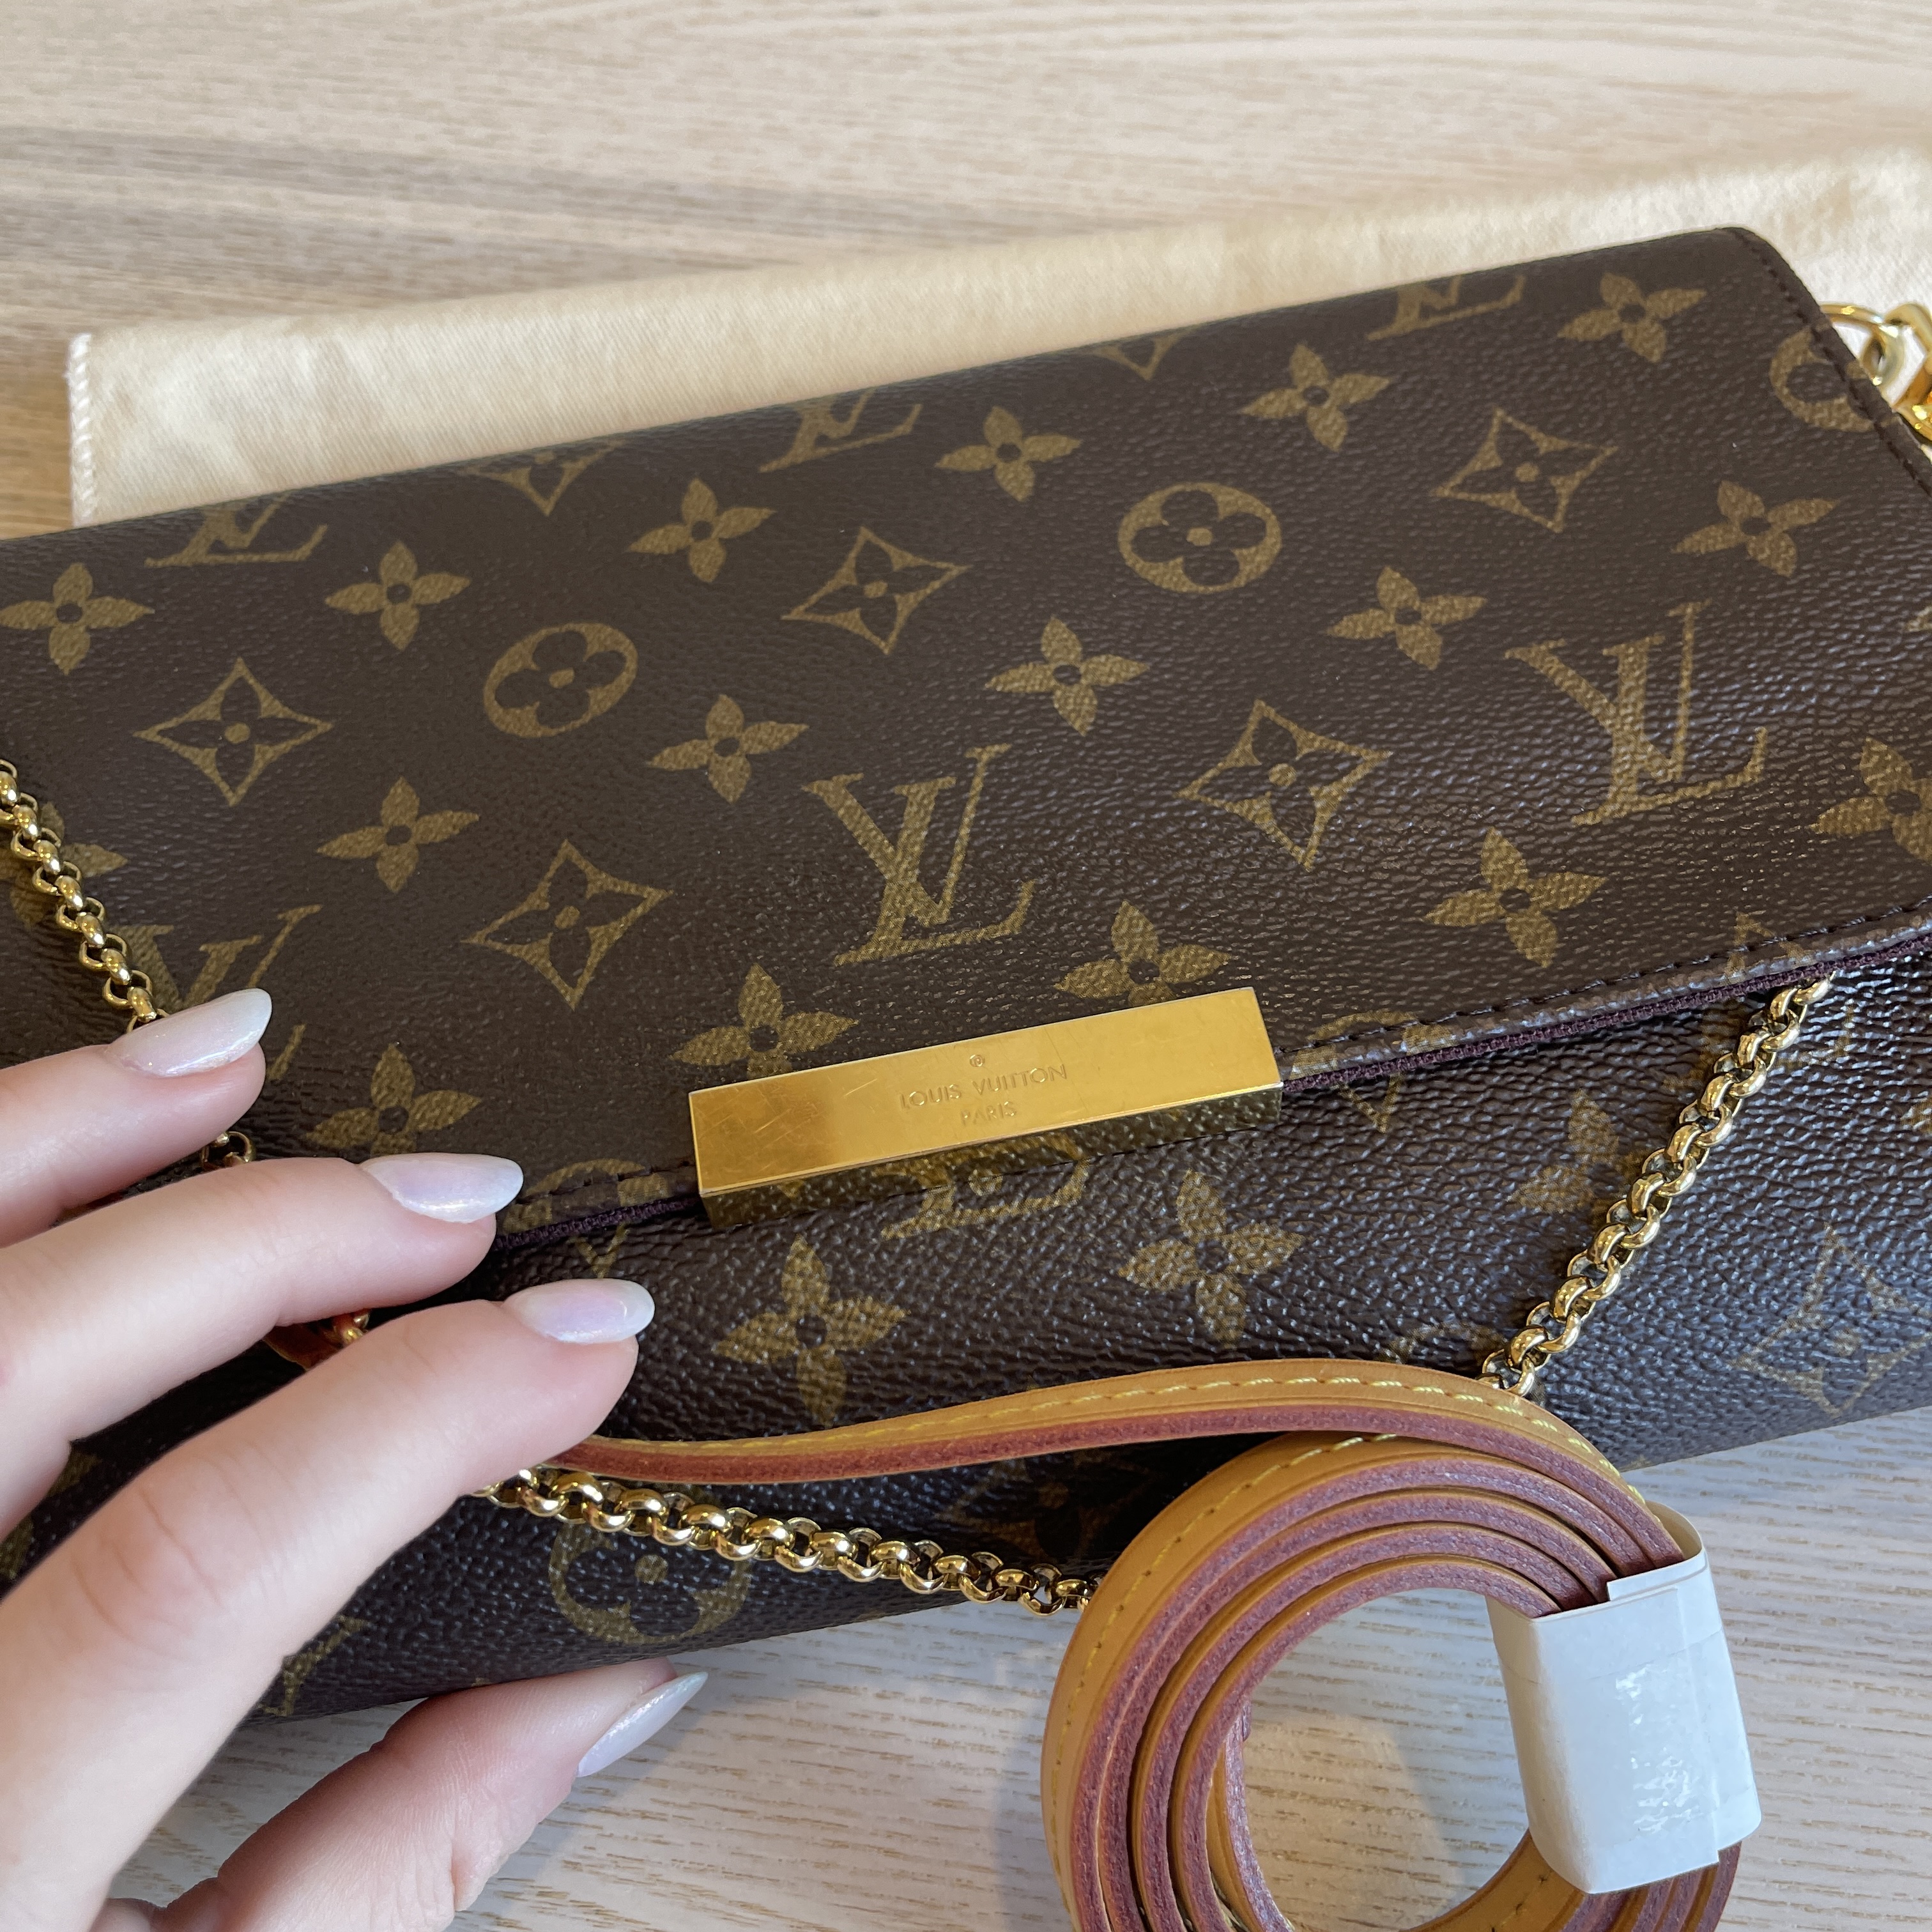 Louis Vuitton Favorite MM -vs- Felicie Chain Wallet